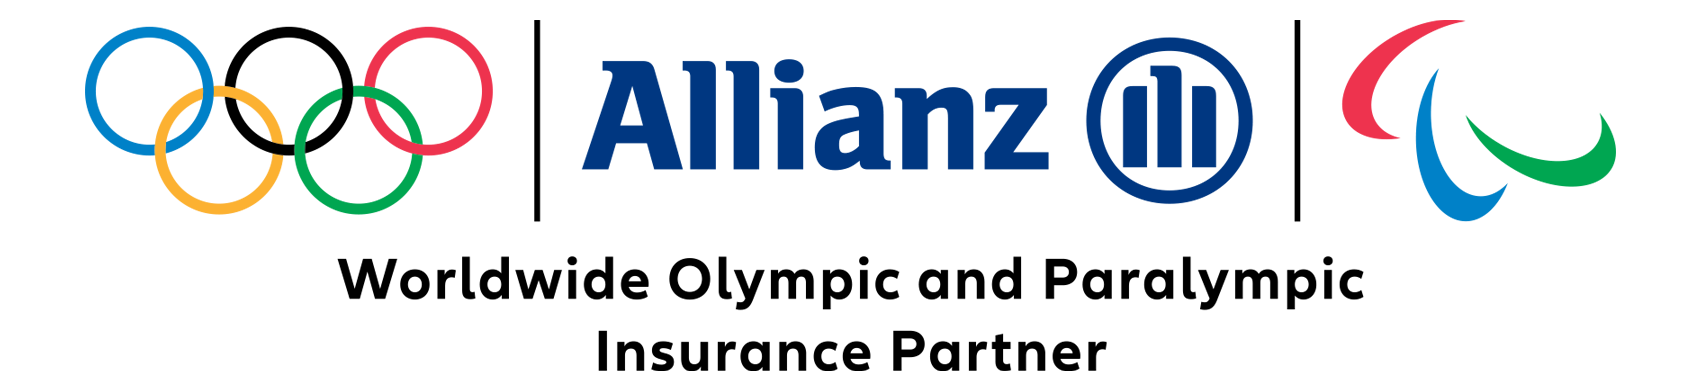 Allianz Aseguradora Oficial Juegos Olímpicos